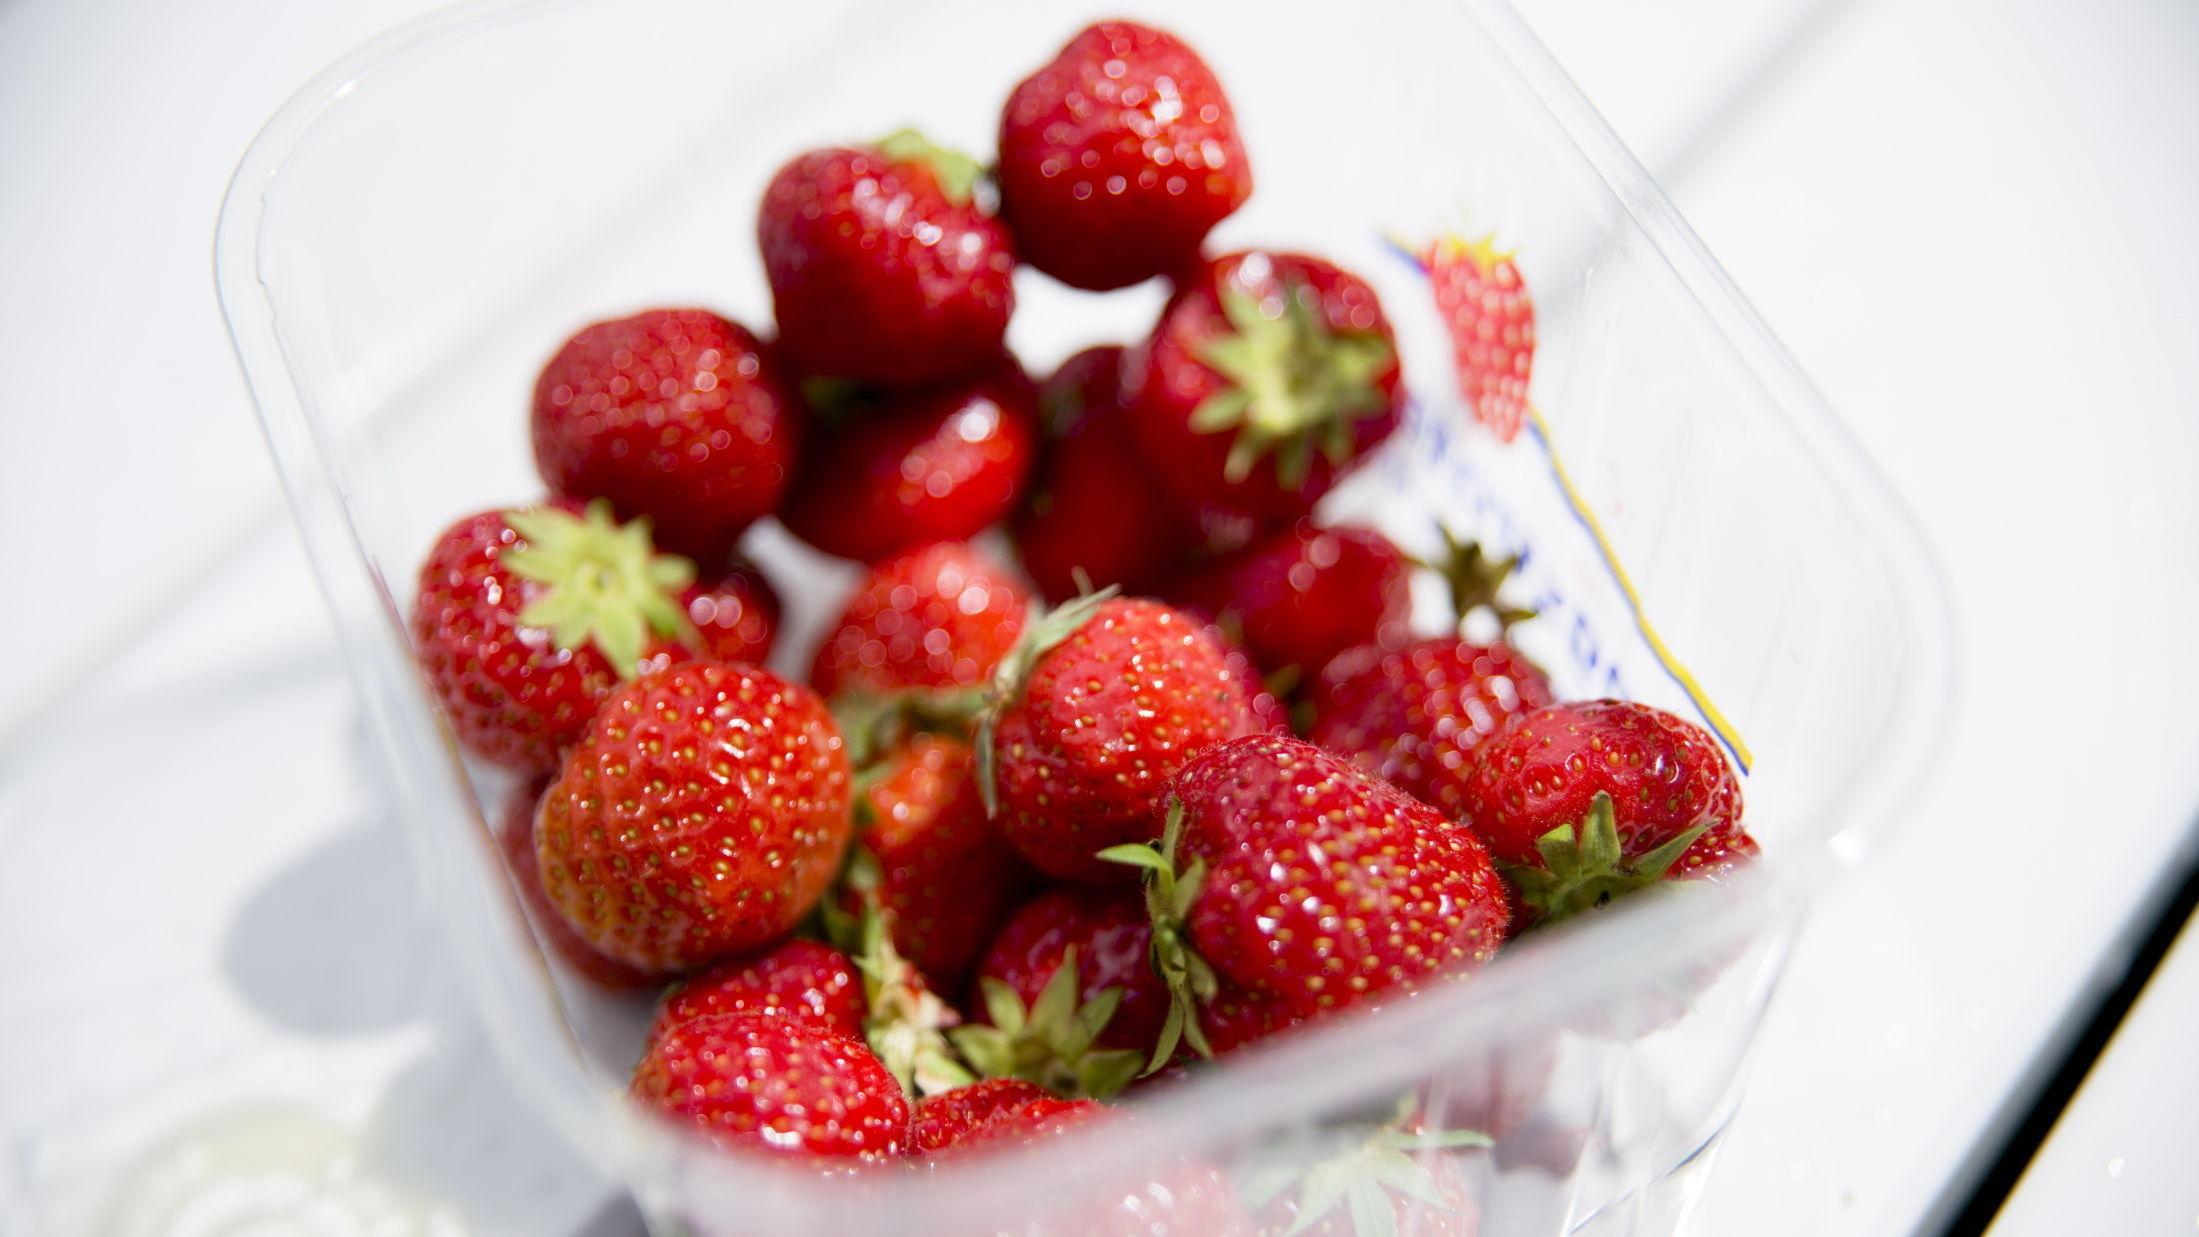 POPULÆRT: Tidlig jordbærsesong fører til at flere produsenter nå er tomme for bær. Foto: Robert S. Eik/VG